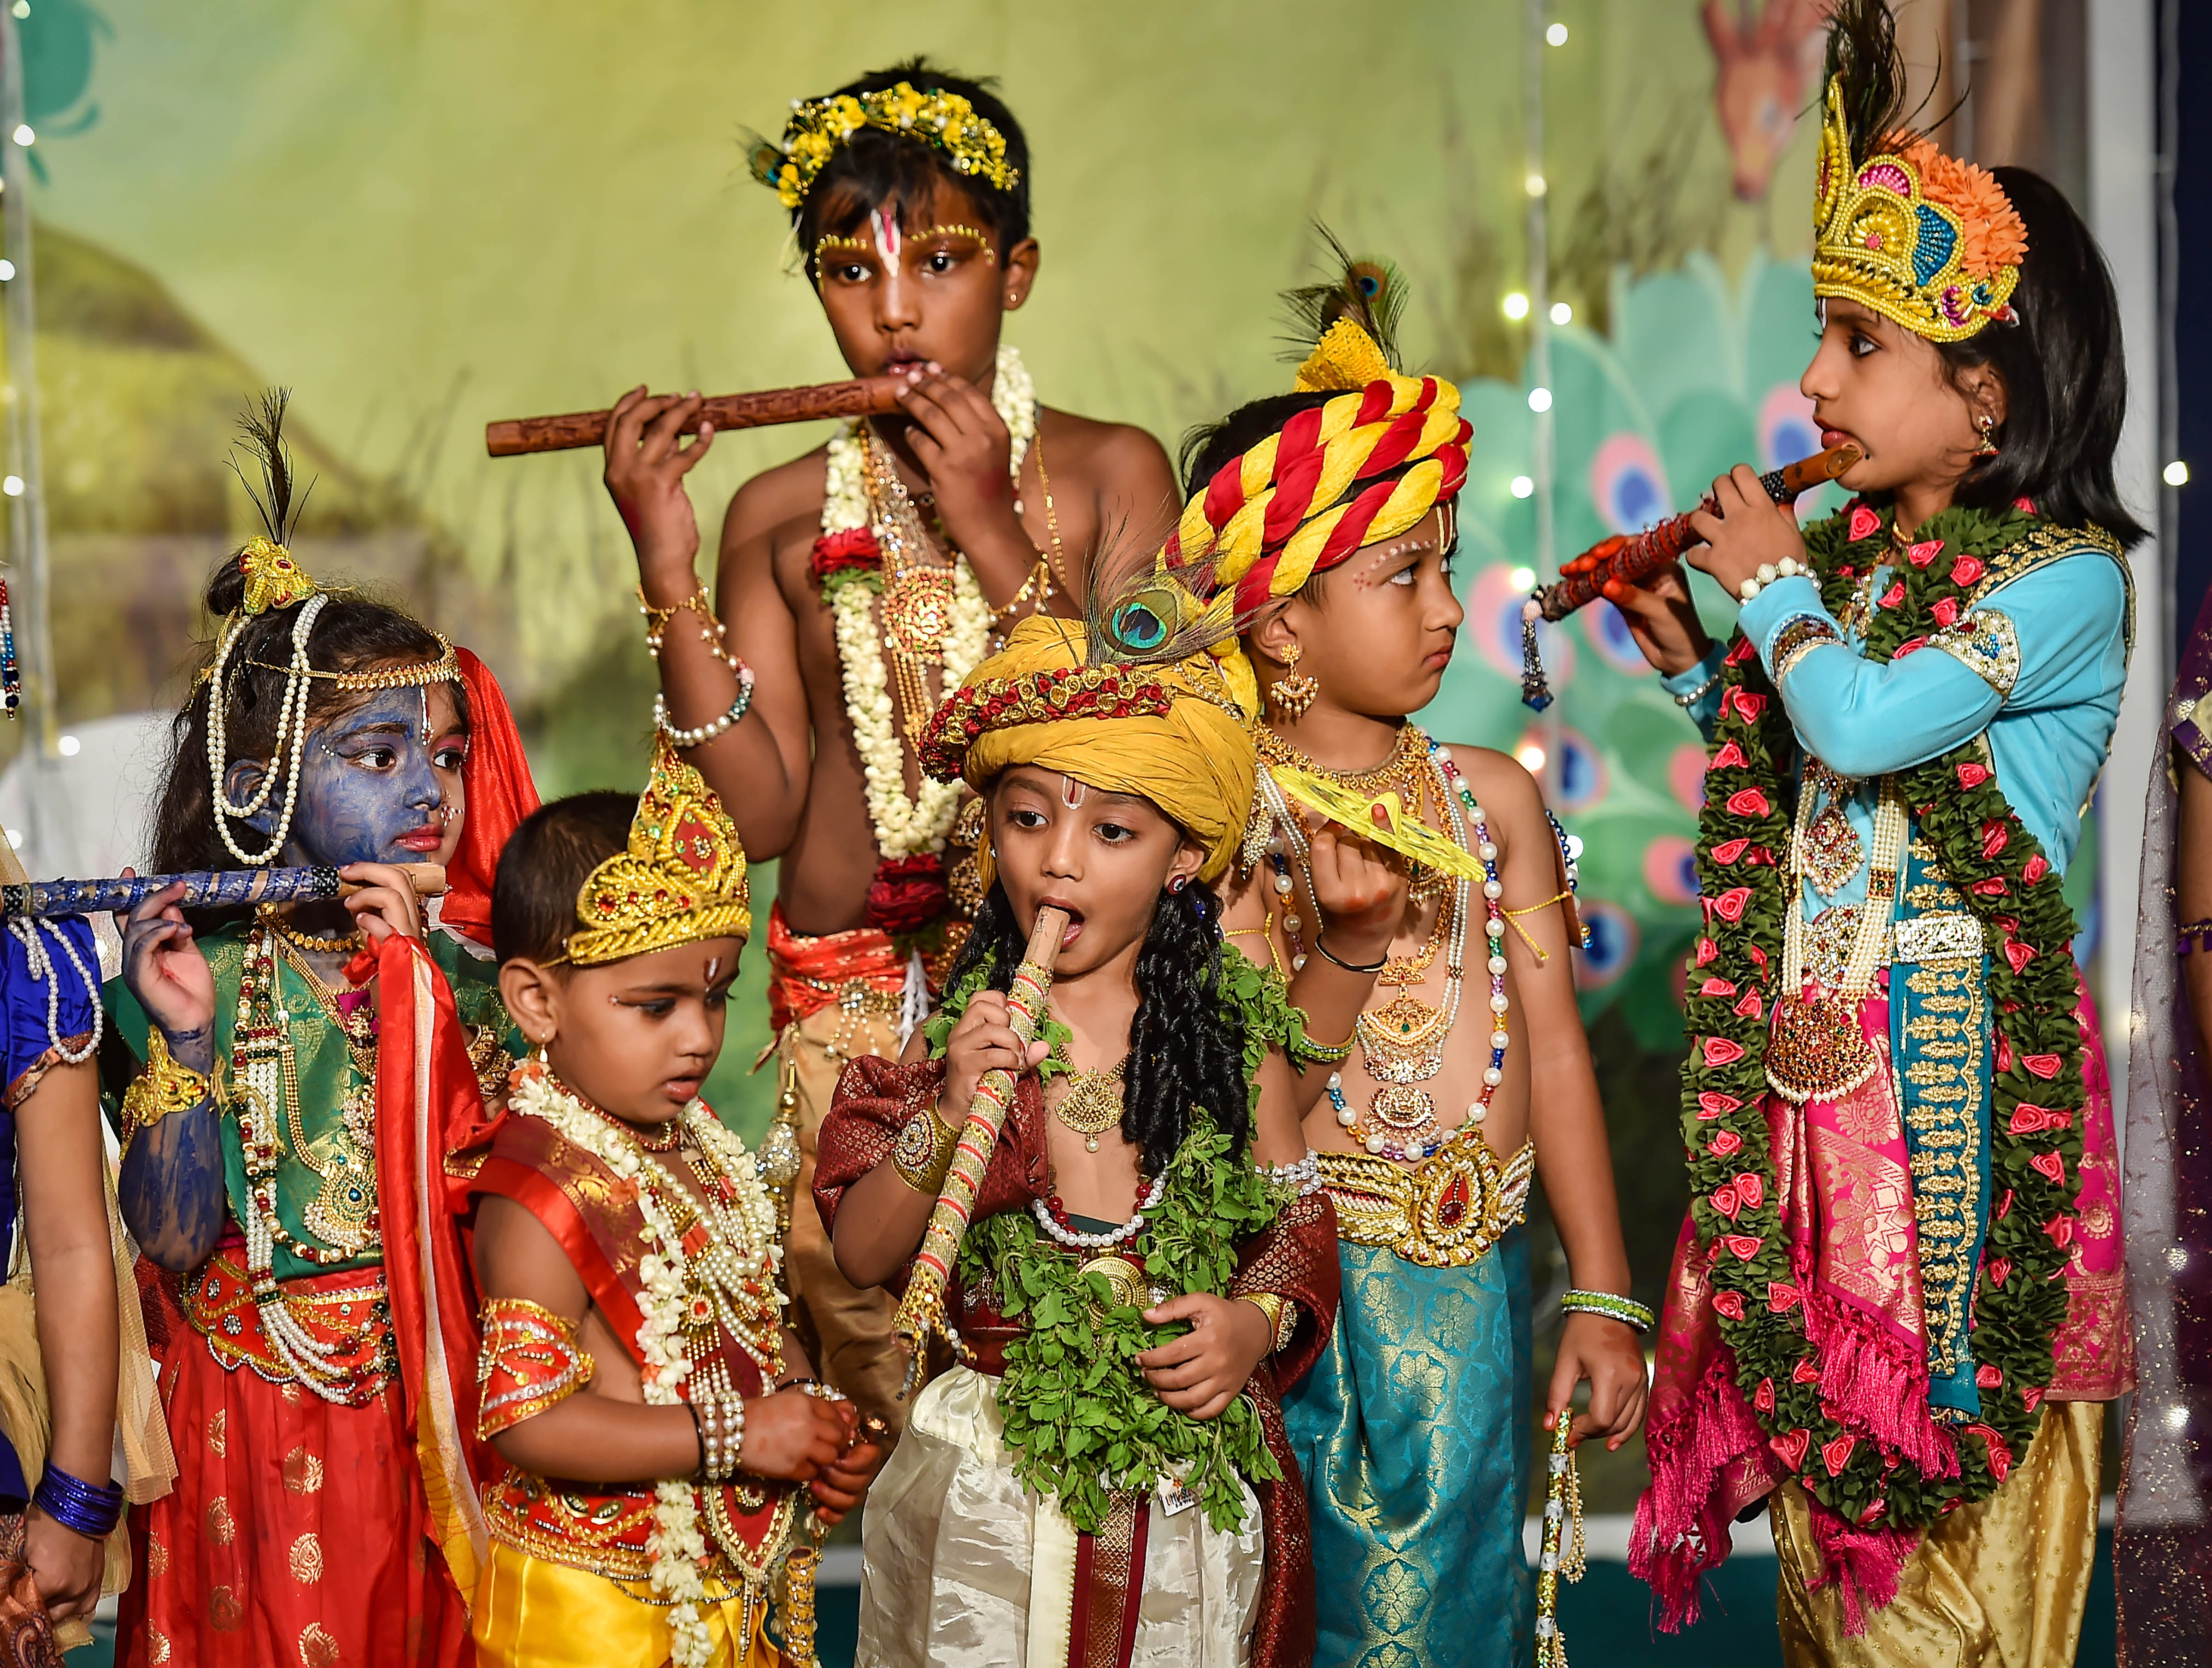 Vishu | Festival, Decoration, Items, & Significance | Britannica